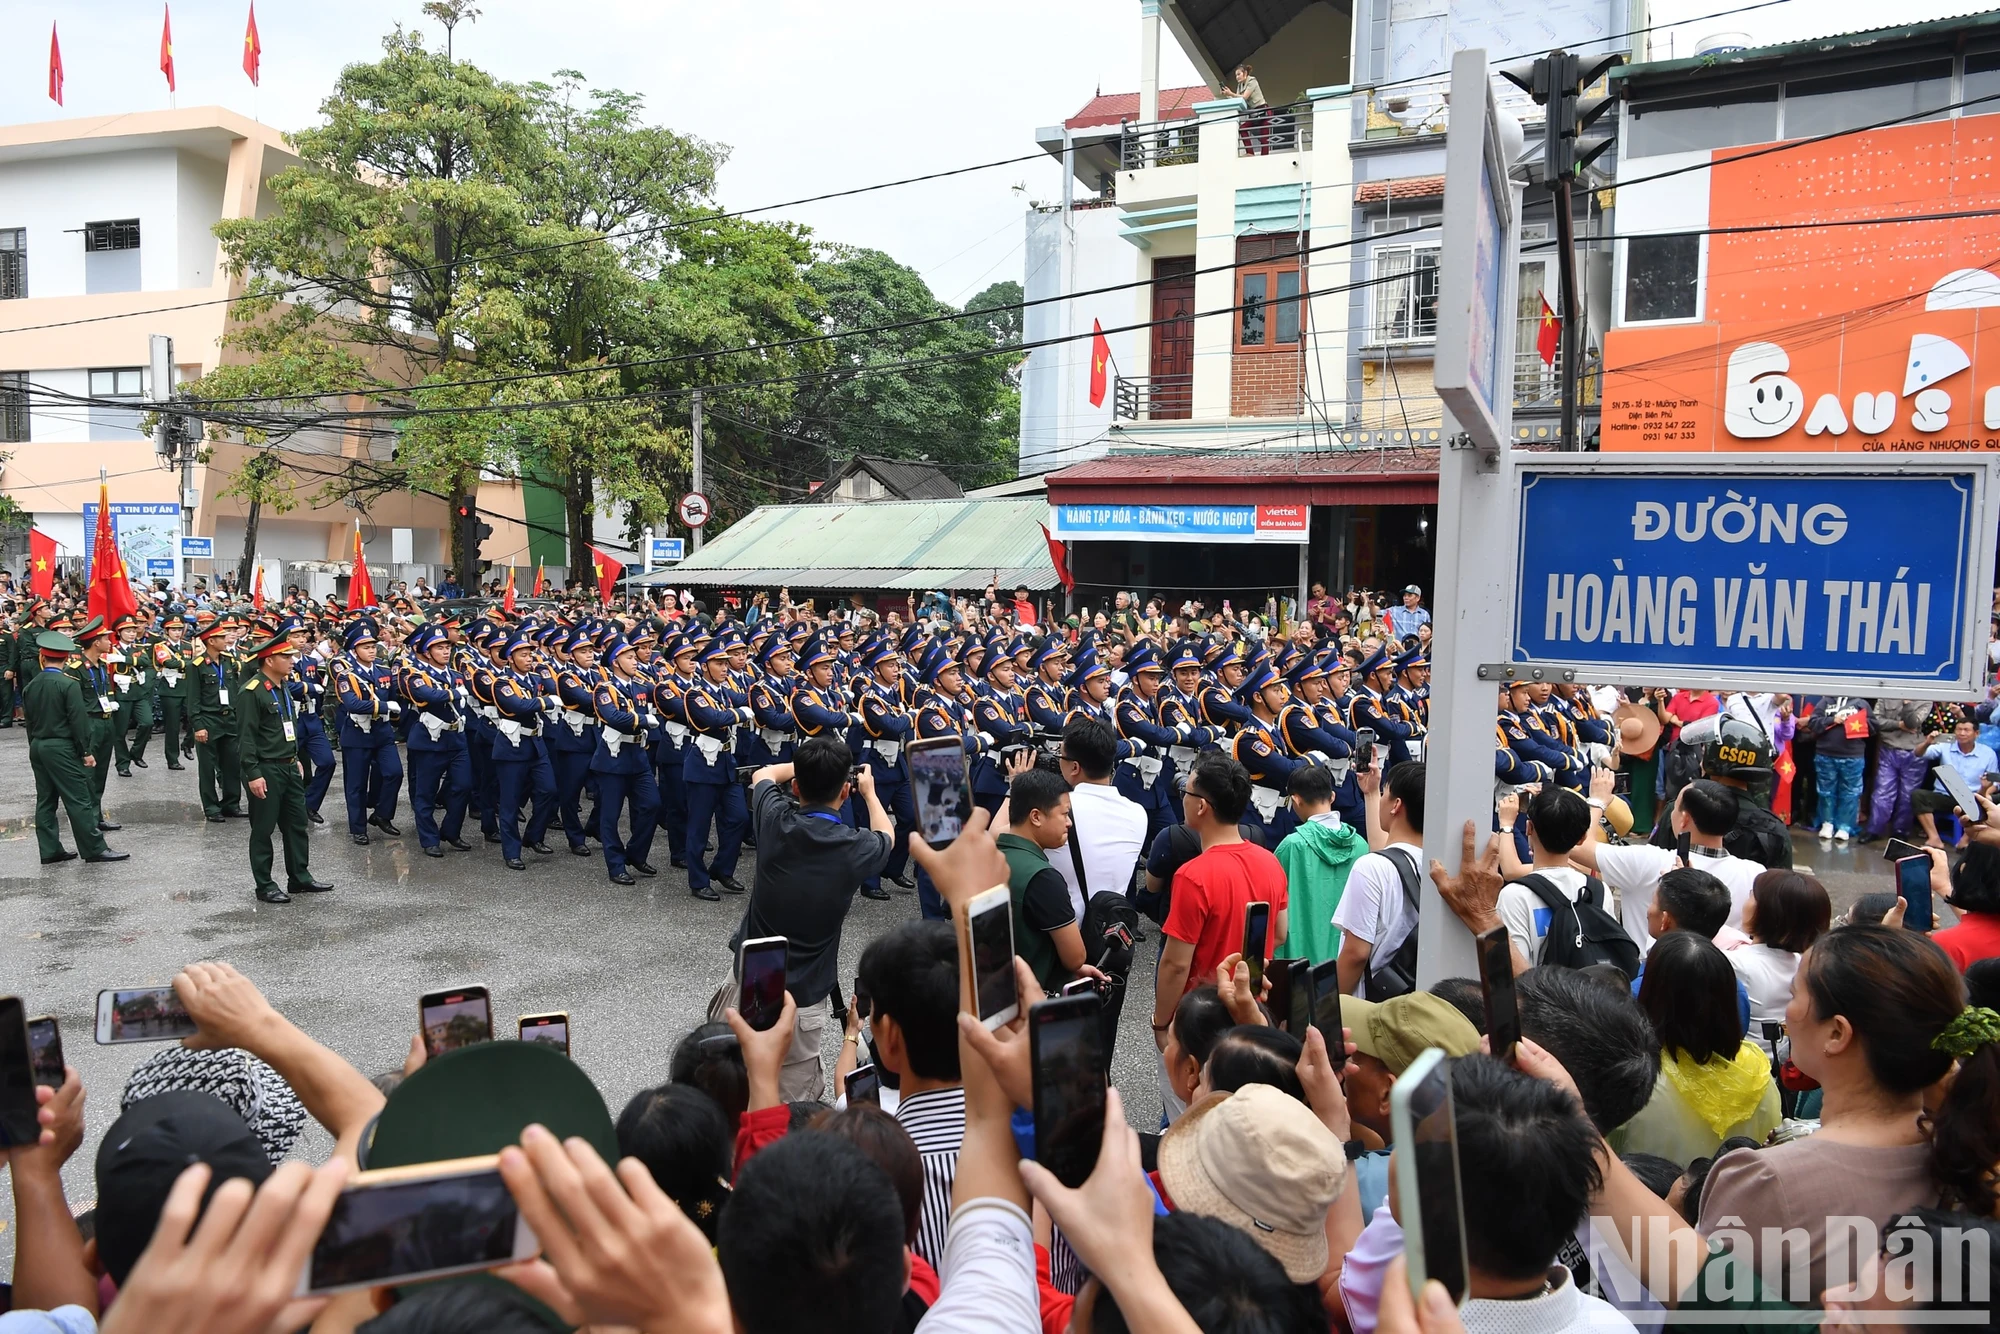 Sau khi kết thúc phần diễu binh, diễu hành tại sân vận động tỉnh Điện Biên, các lực lượng quân đội, dân quân tự vệ và công an, các ban ngành, đoàn thể xã hội... qua các tuyến phố chính.

